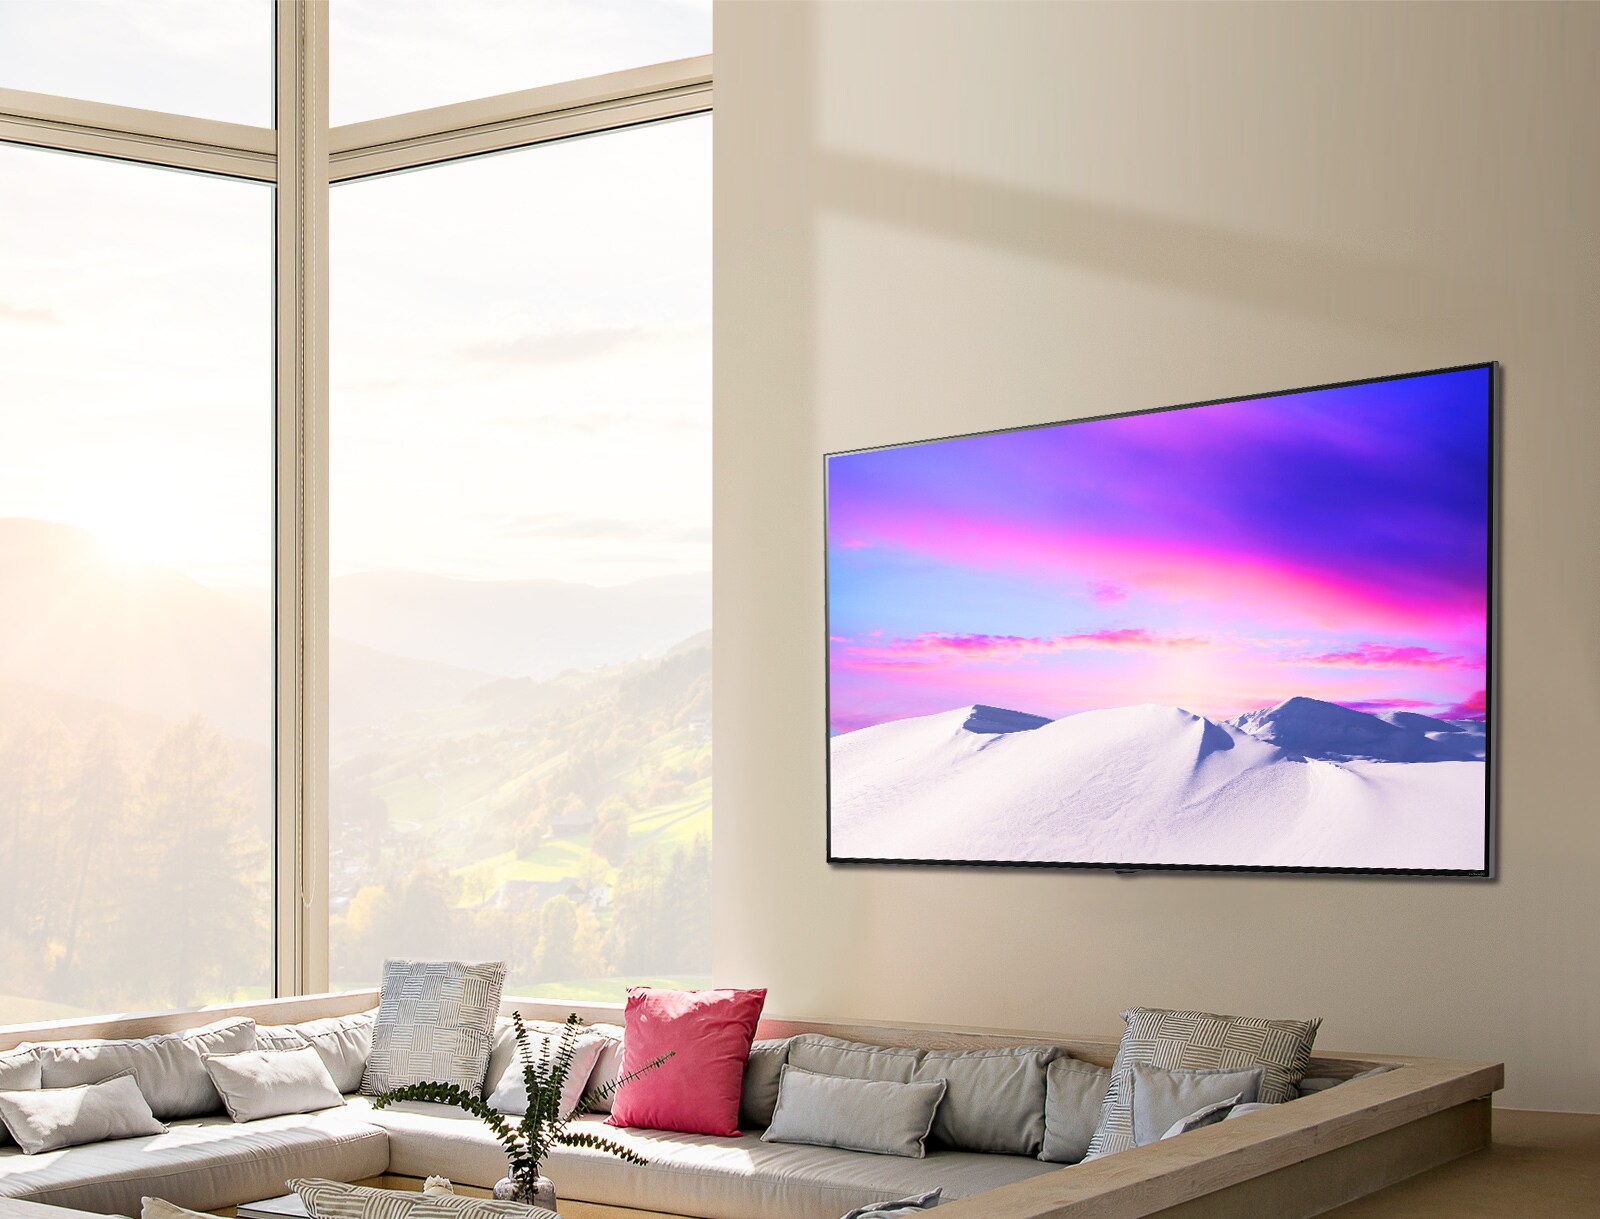 مشهد يُظهر تلفزيون NanoCell من إل جي رقيق بحجم هائل معلق على الجدار.